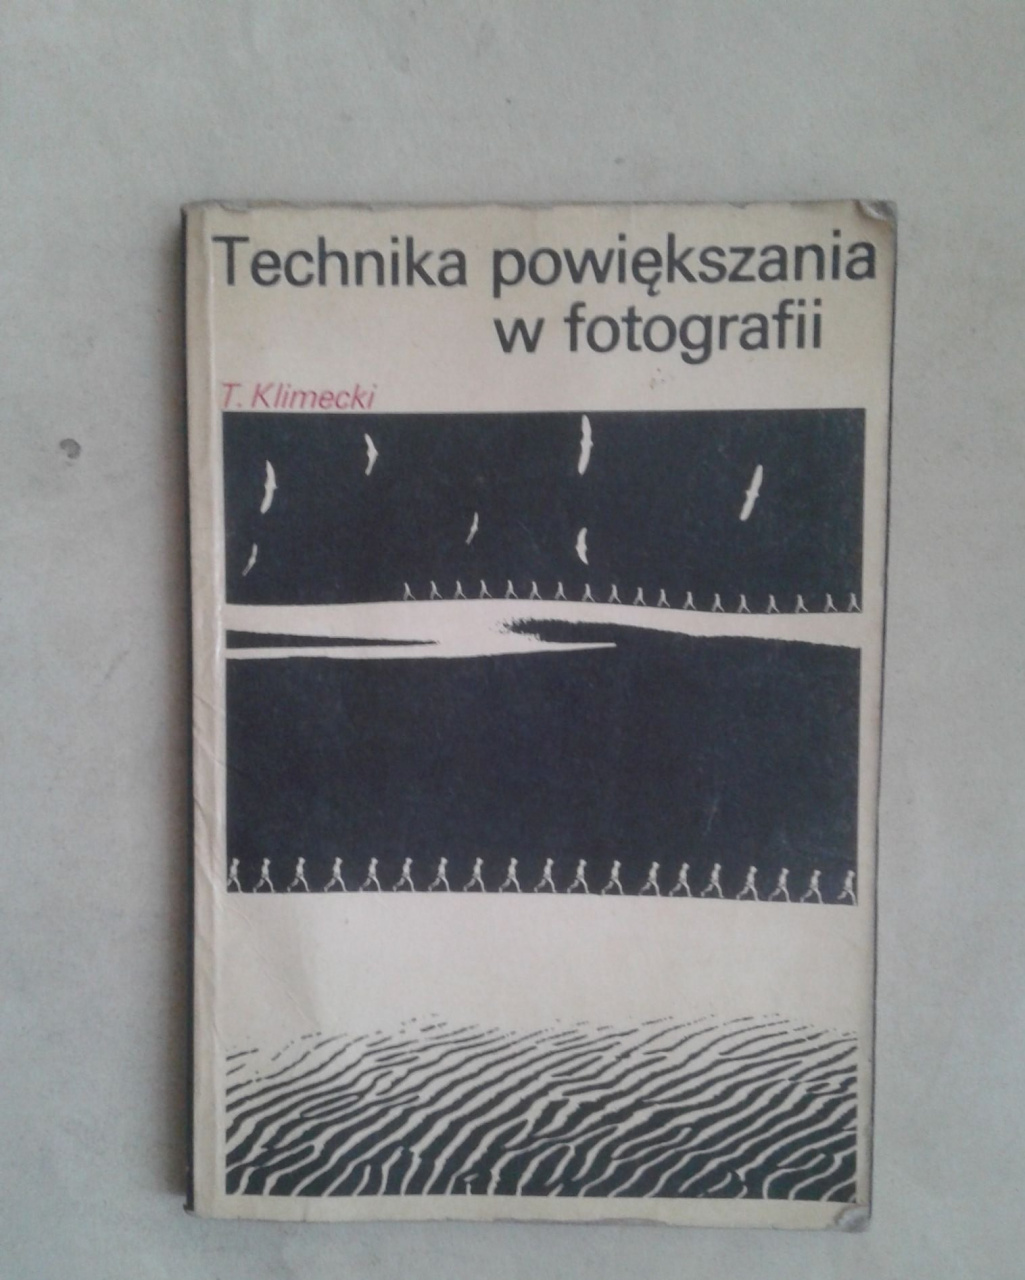 Technika powiekszania w fotografii T.K.limecki.Warszawa 1977.ПОЛЬСКОЕ ИЗДАНИЕ.РЕДКОСТЬ!!!